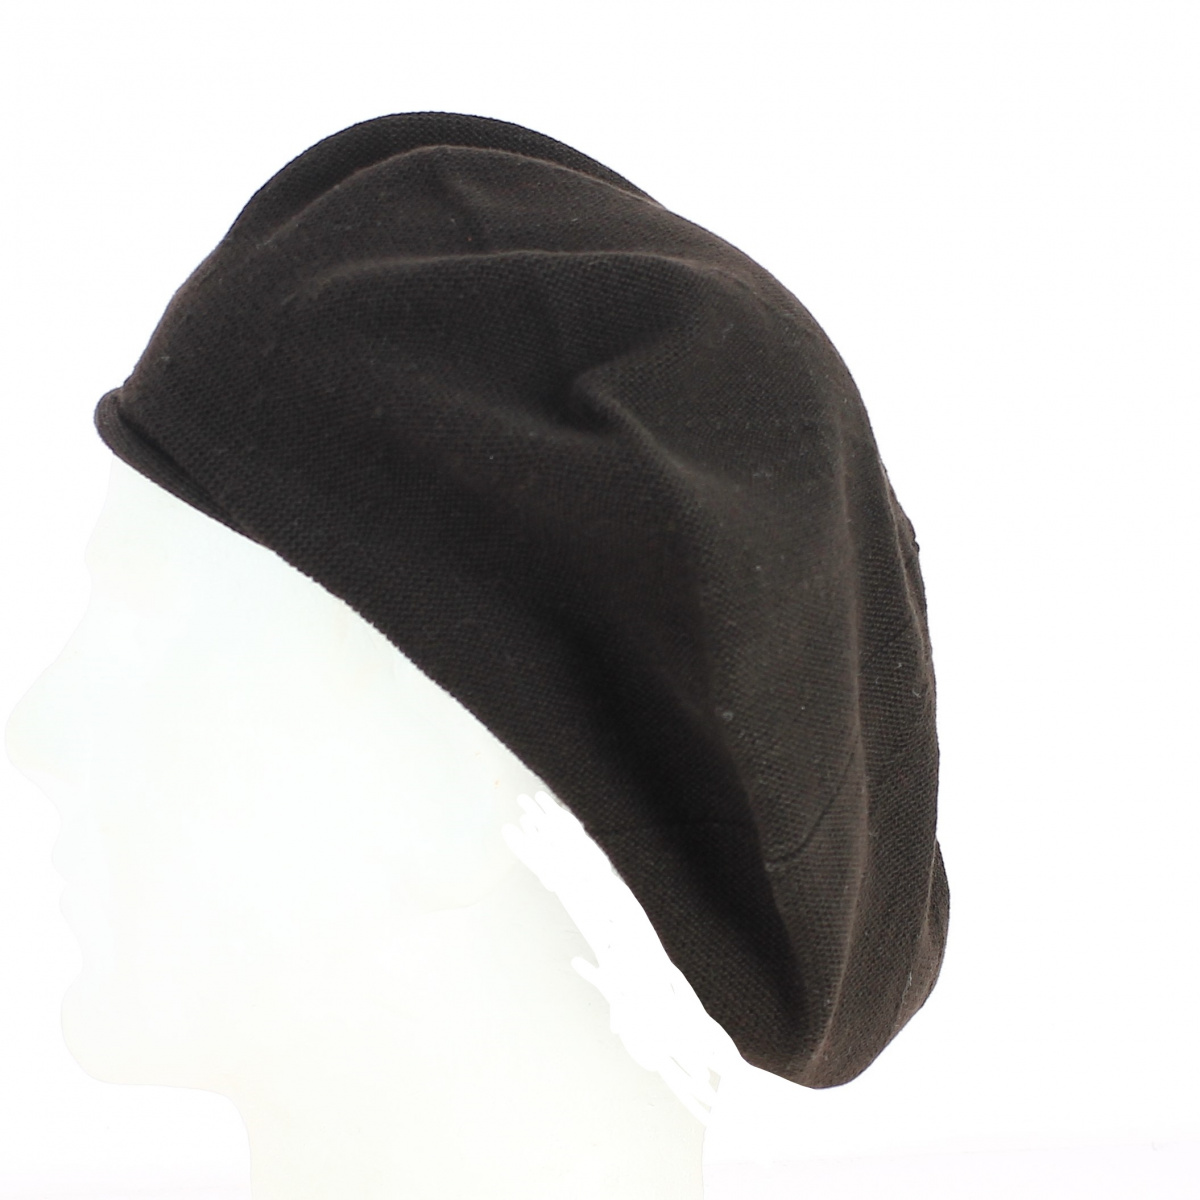 Comment porter la capeline noire - 65 idées de tenue originale